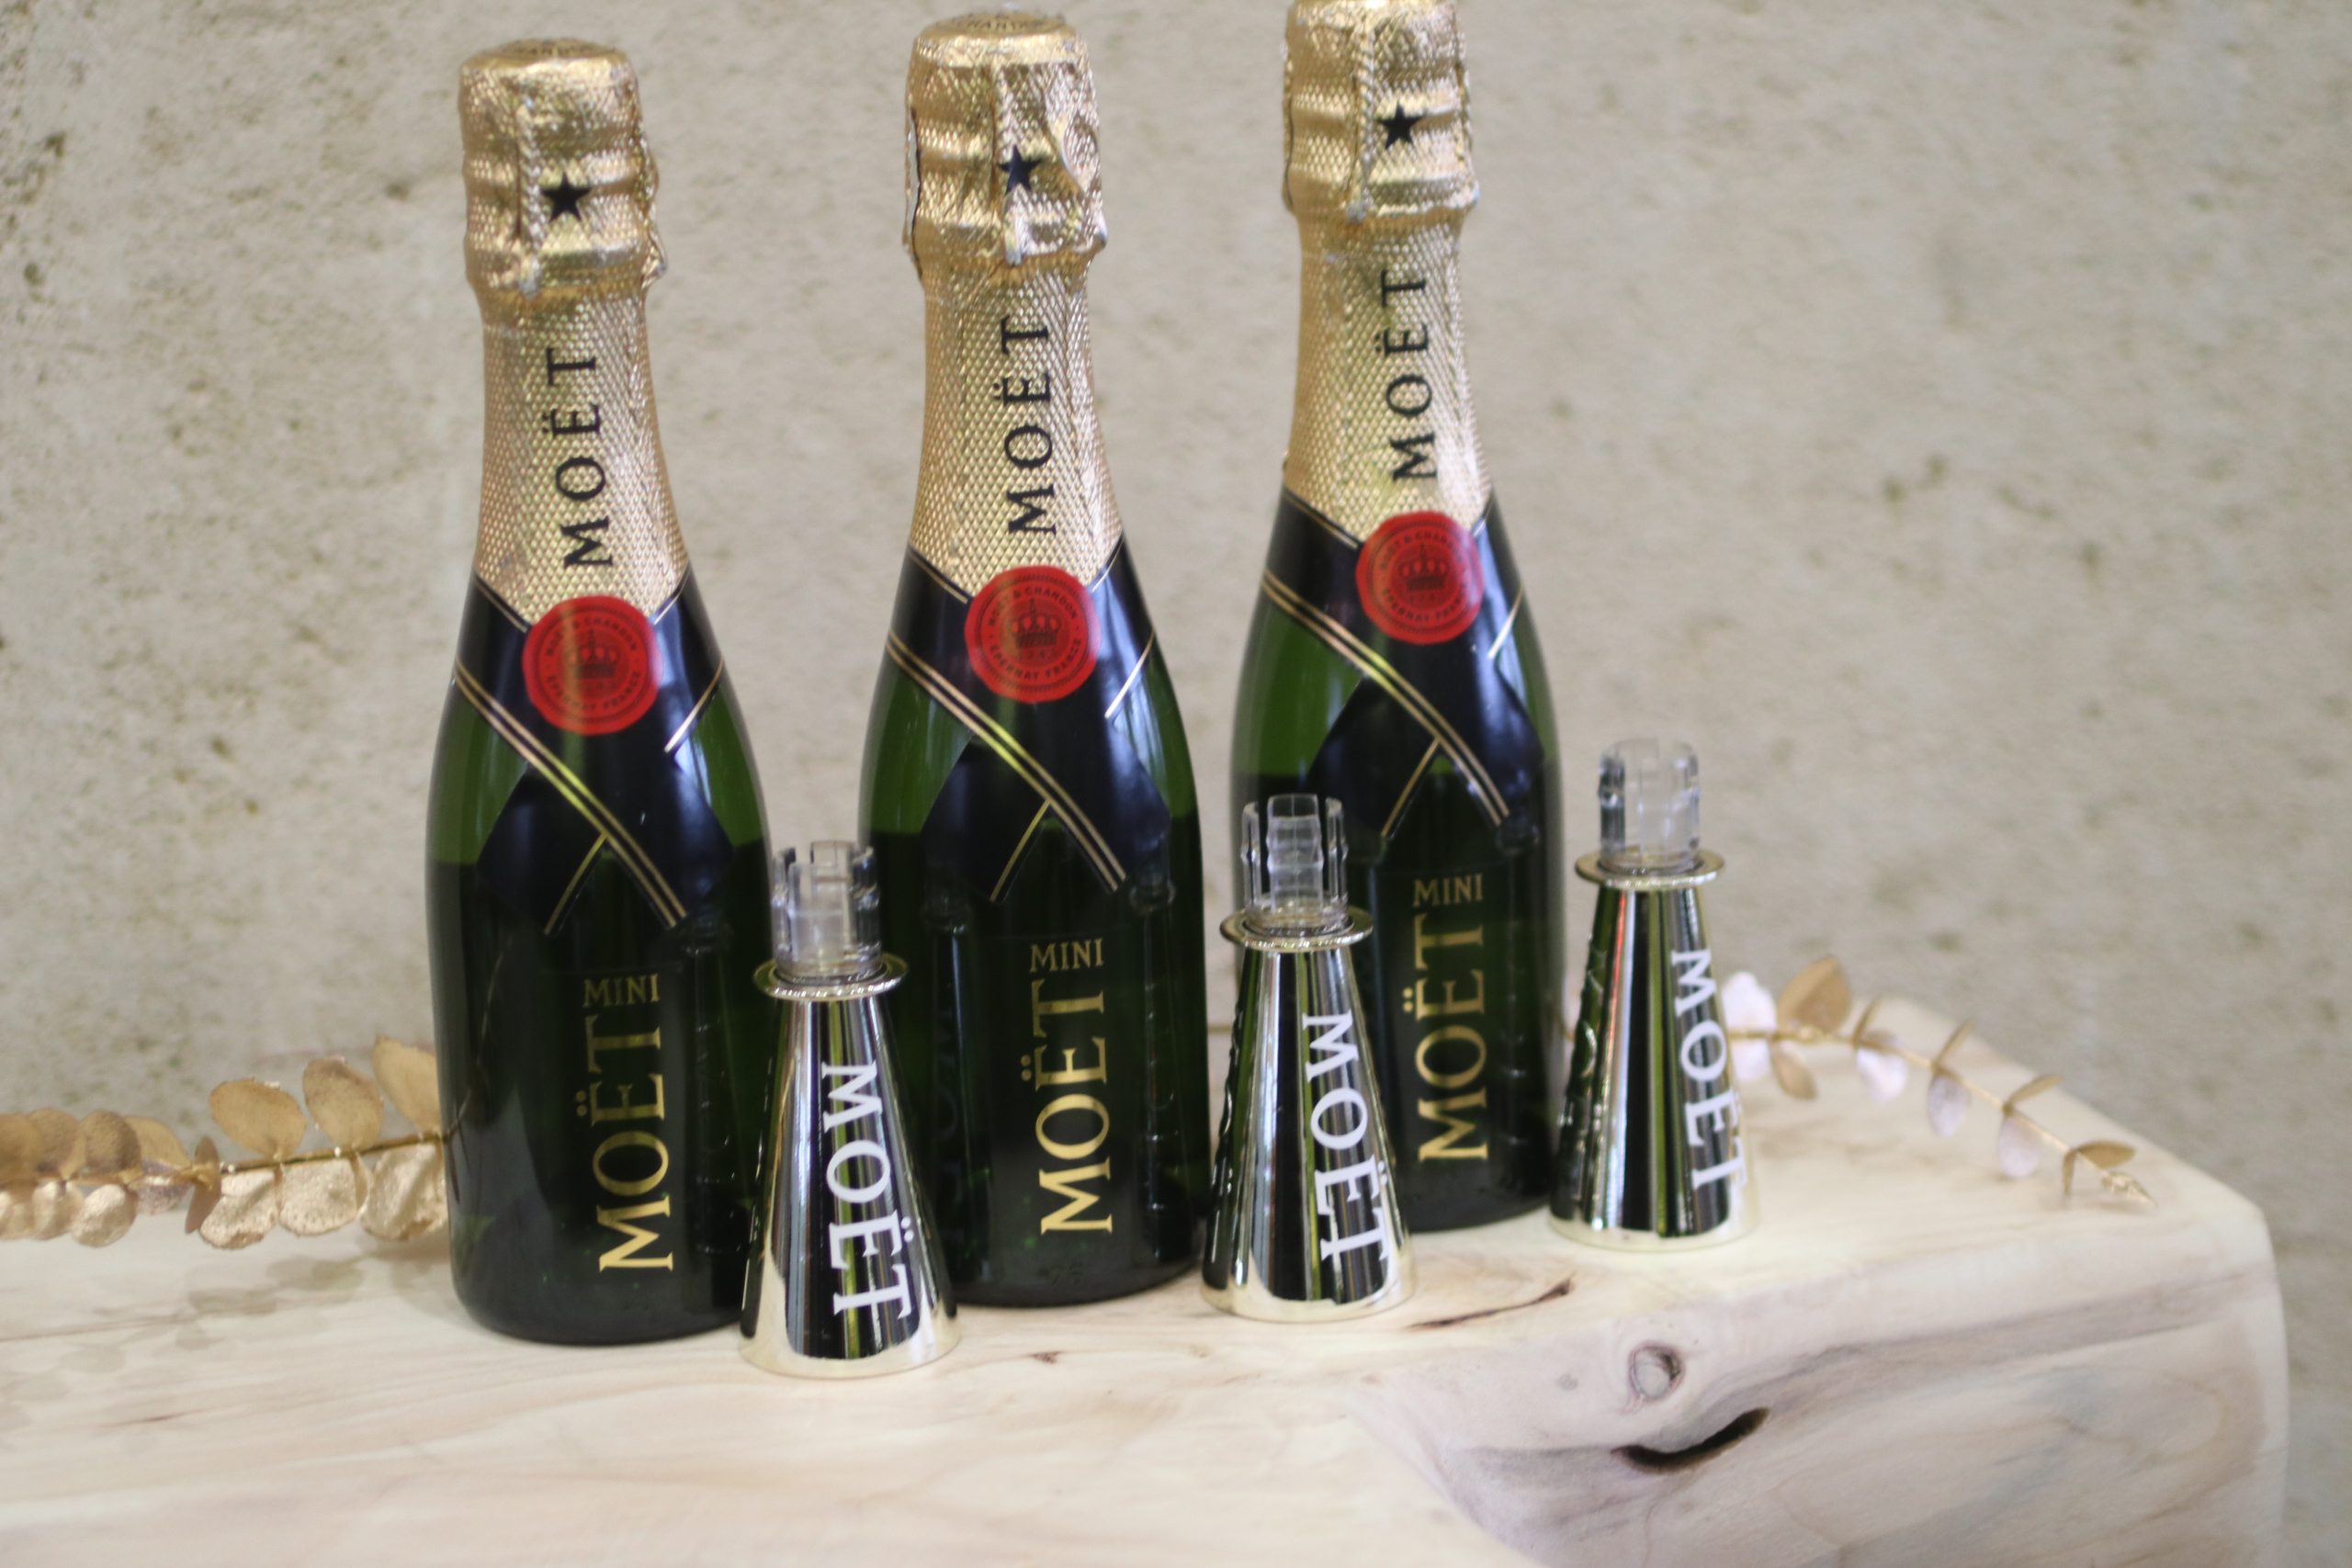 ELADVA – Moët & Chandon Mini Champagne kortyolóval (3db) díszcsomagolásban – 26.800.-Ft